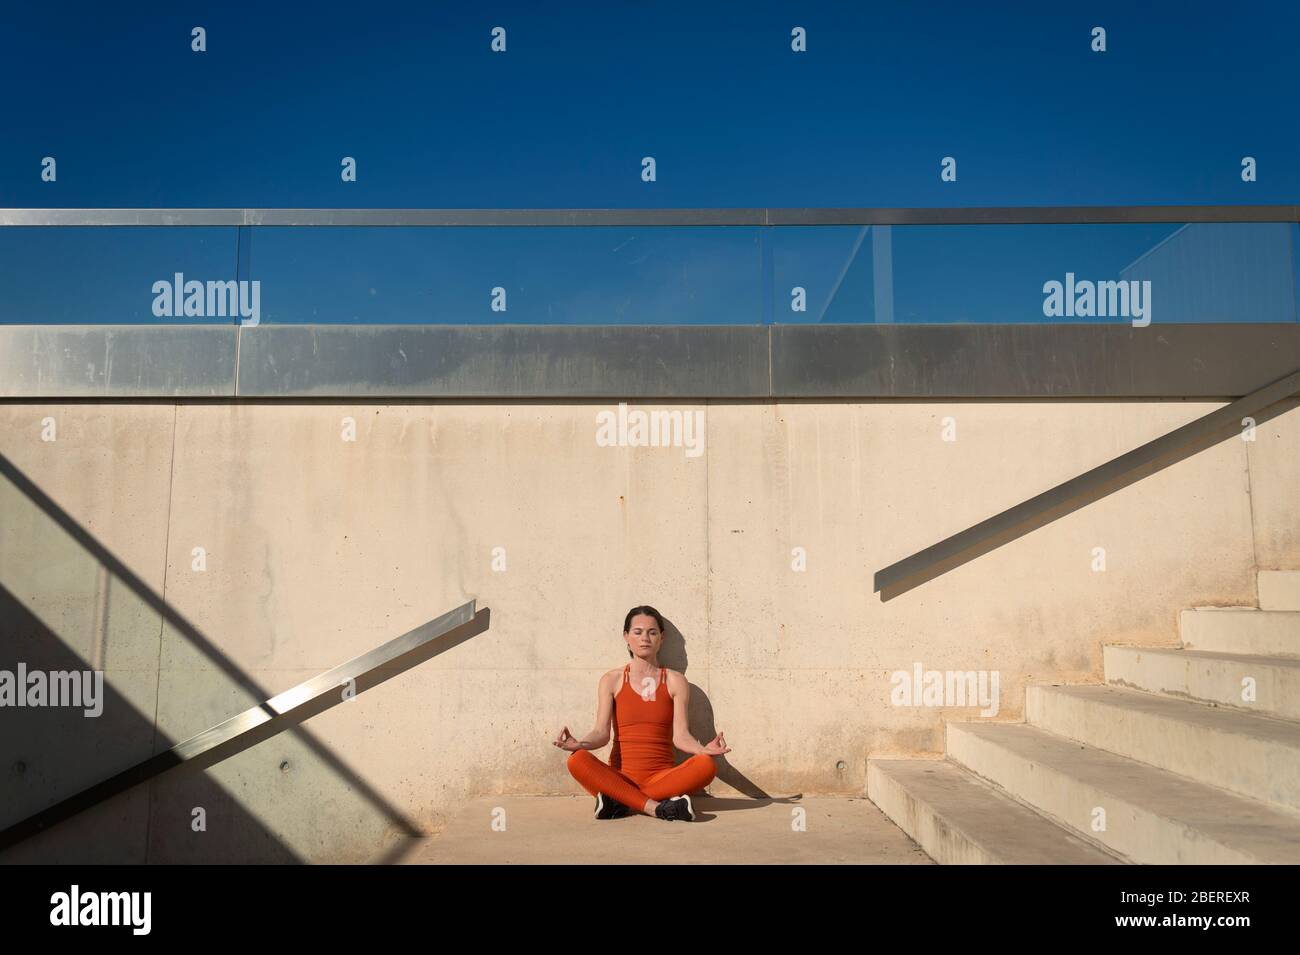 donna che pratica yoga e medita al sole, ambiente urbano con passi concreti Foto Stock